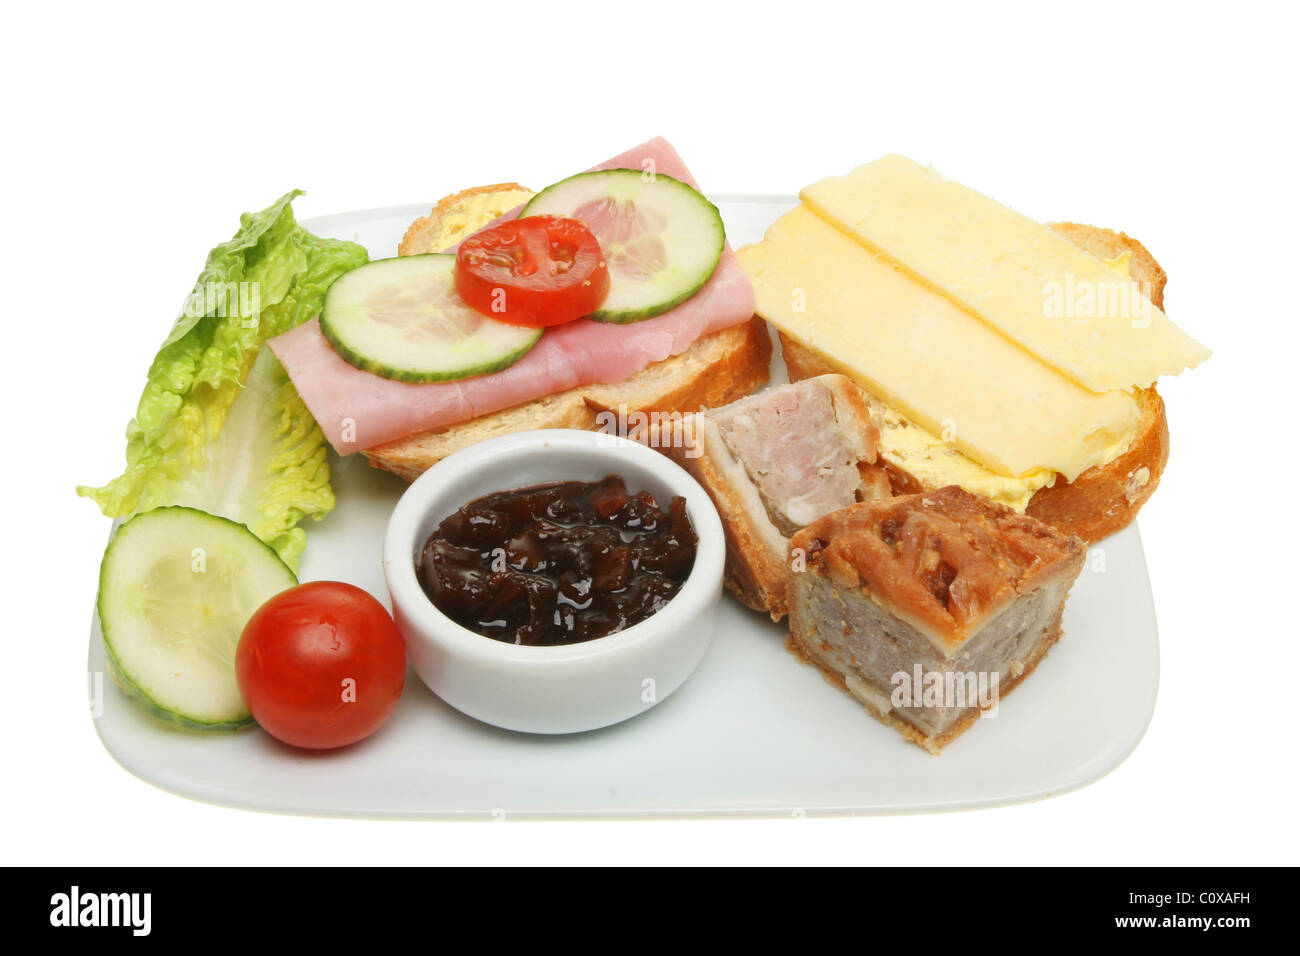 Assiette de snack food de pork pie, pain, fromage, jambon et salade isolated on white Banque D'Images